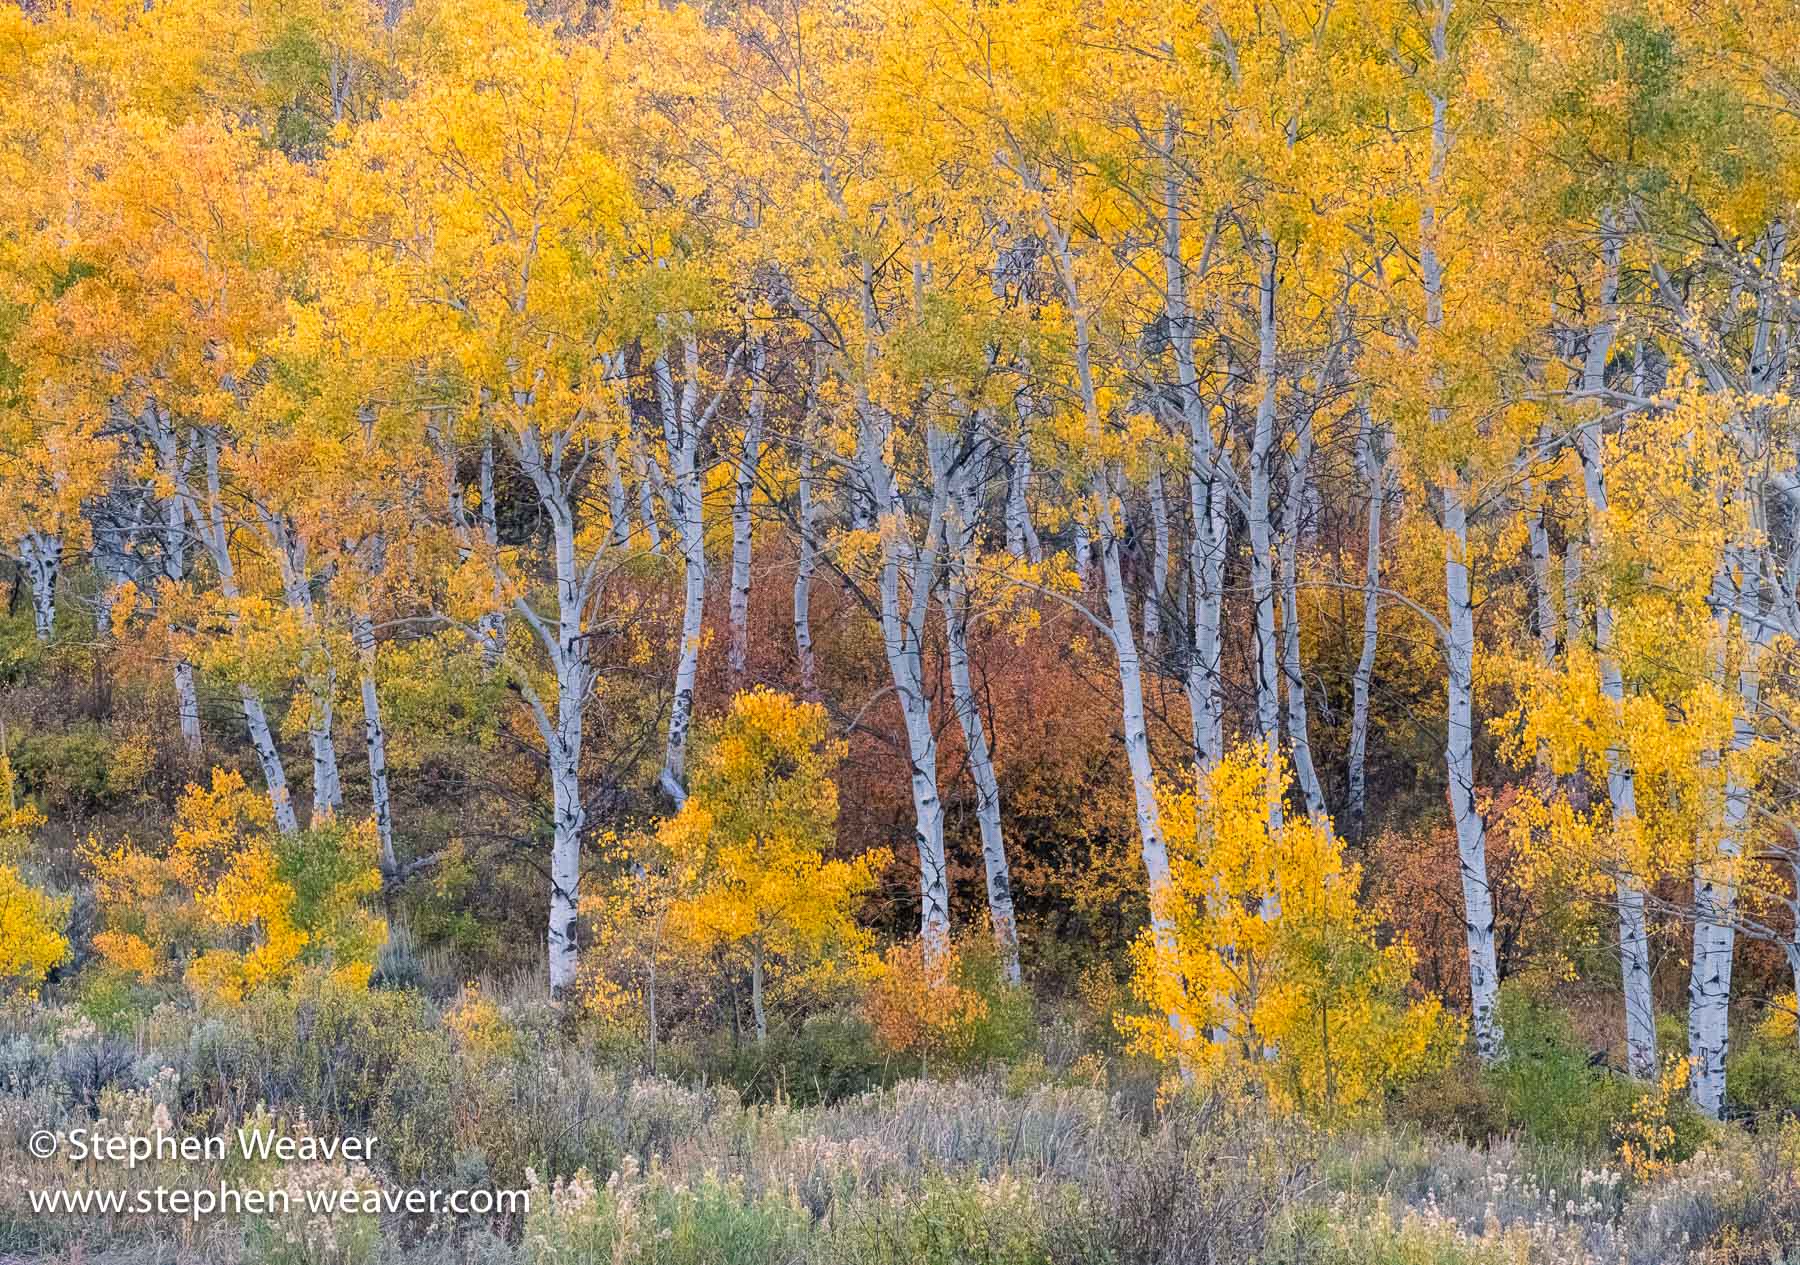 Buford-Castlewood Road, Colorado, Fall Colors, aspen